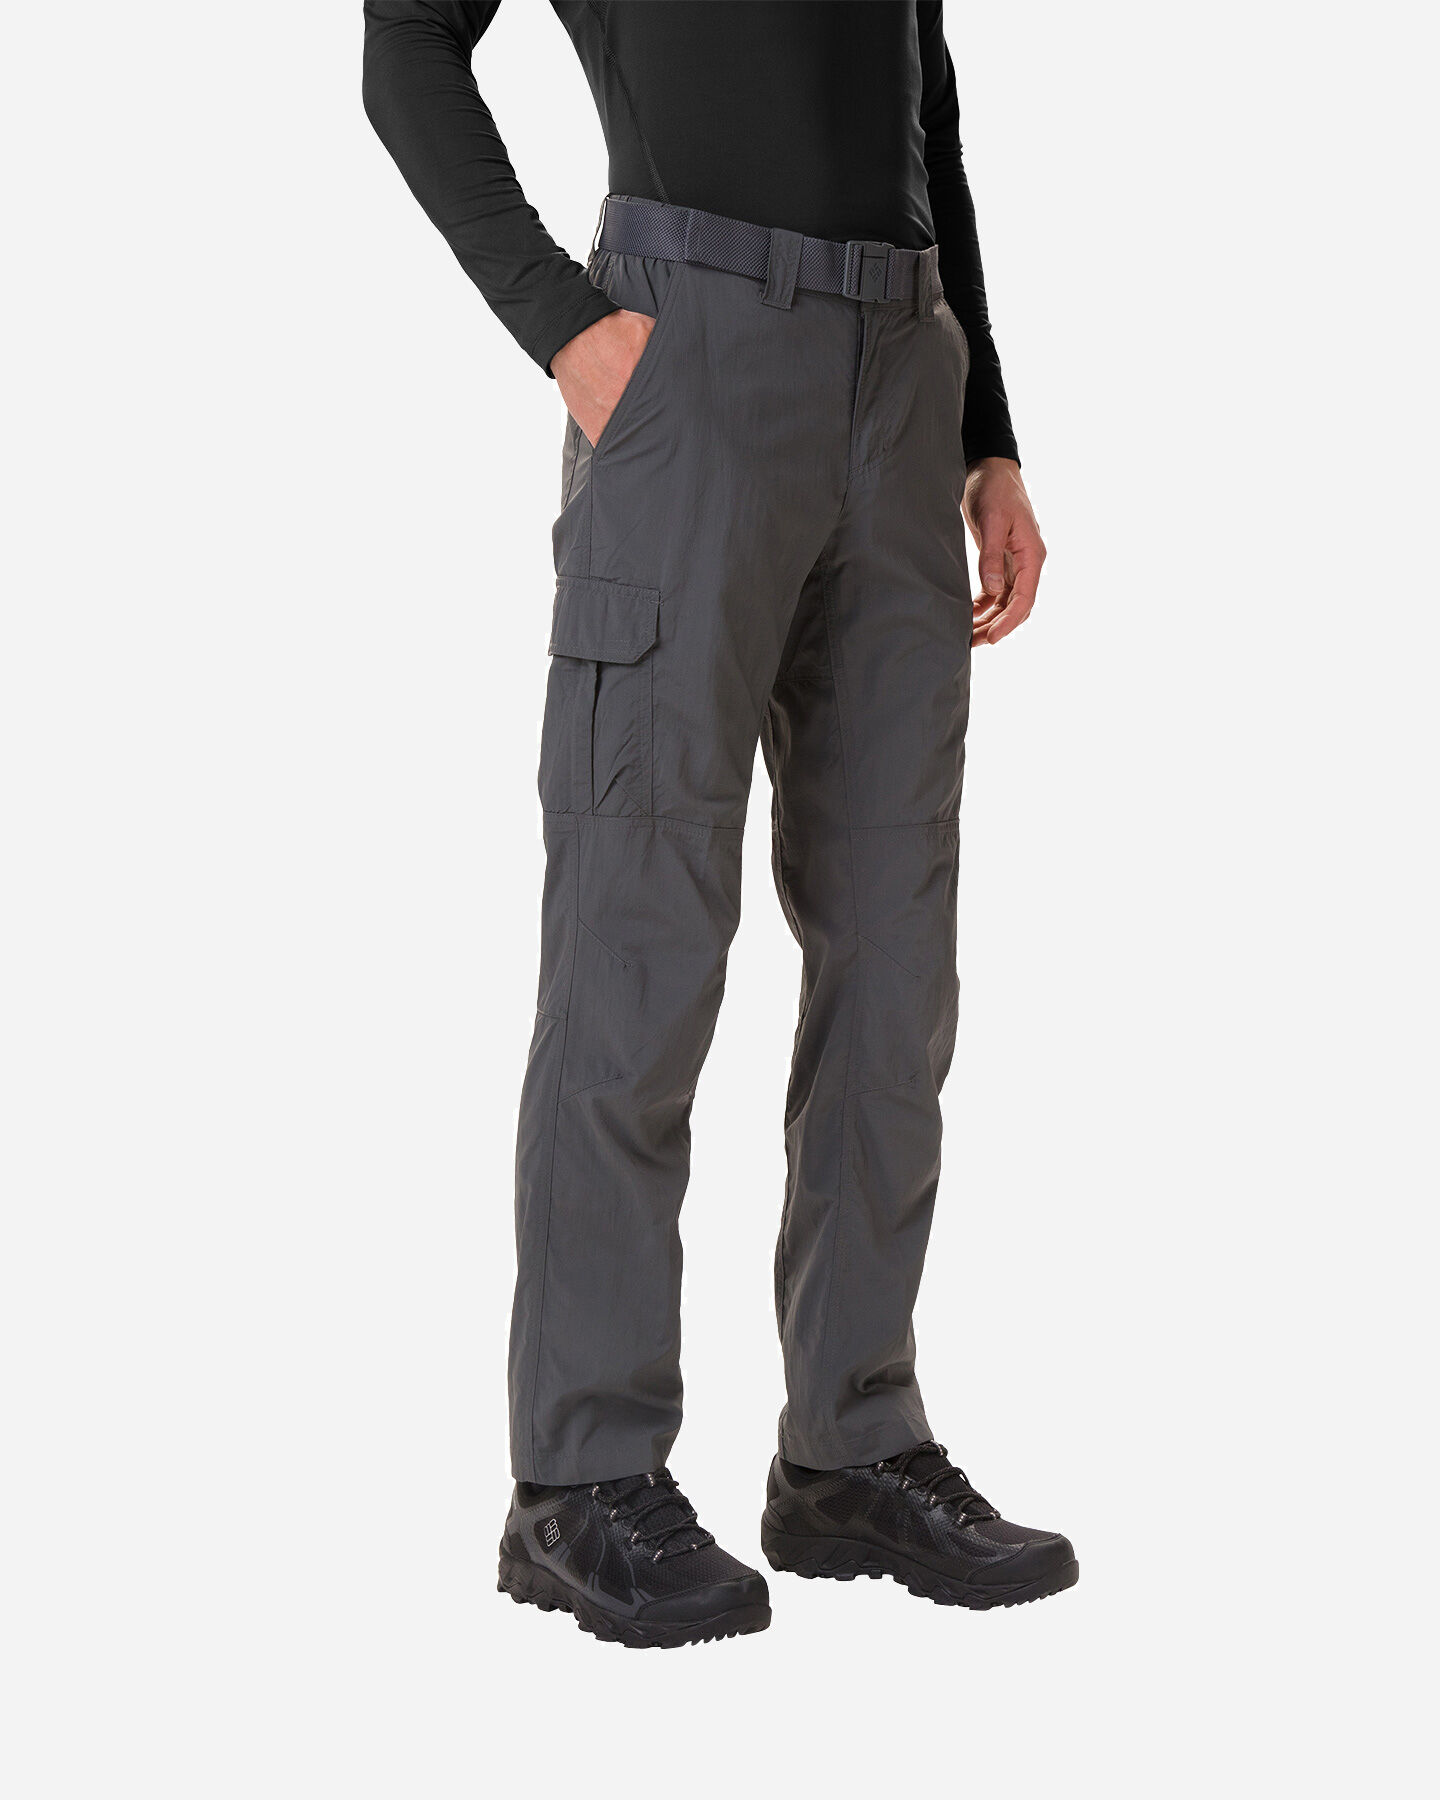  Pantalone outdoor COLUMBIA SILVER RIDGE M S5063121|028|3232 scatto 0